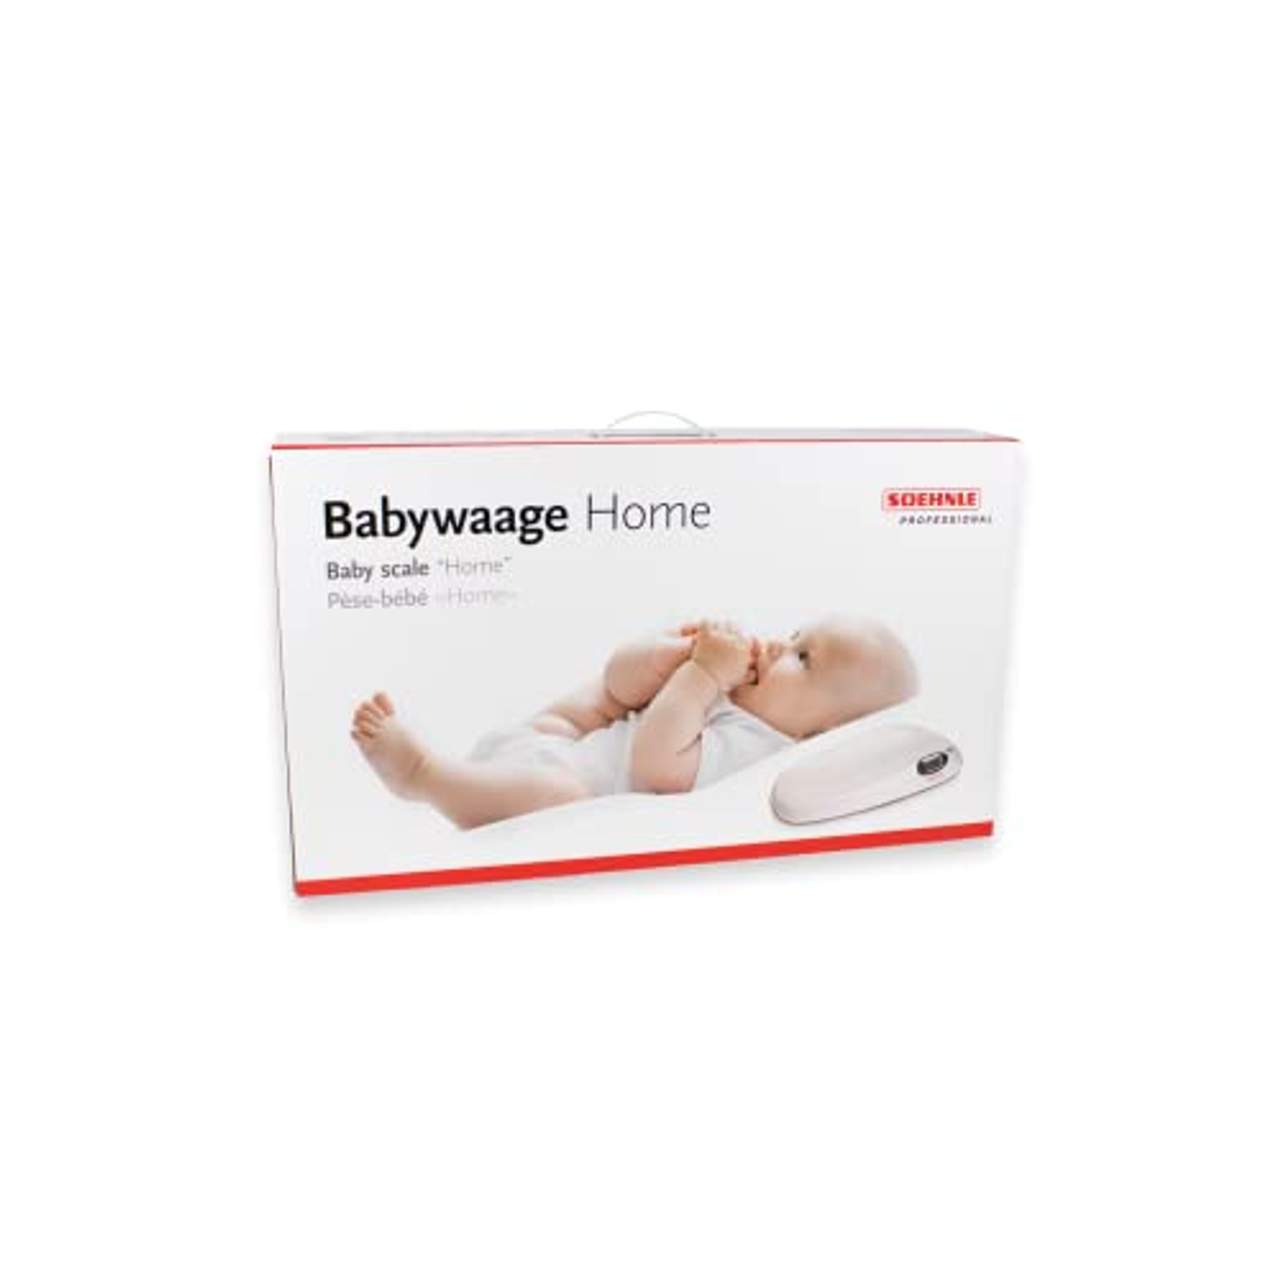 Soehnle Professional Babywaage 8310